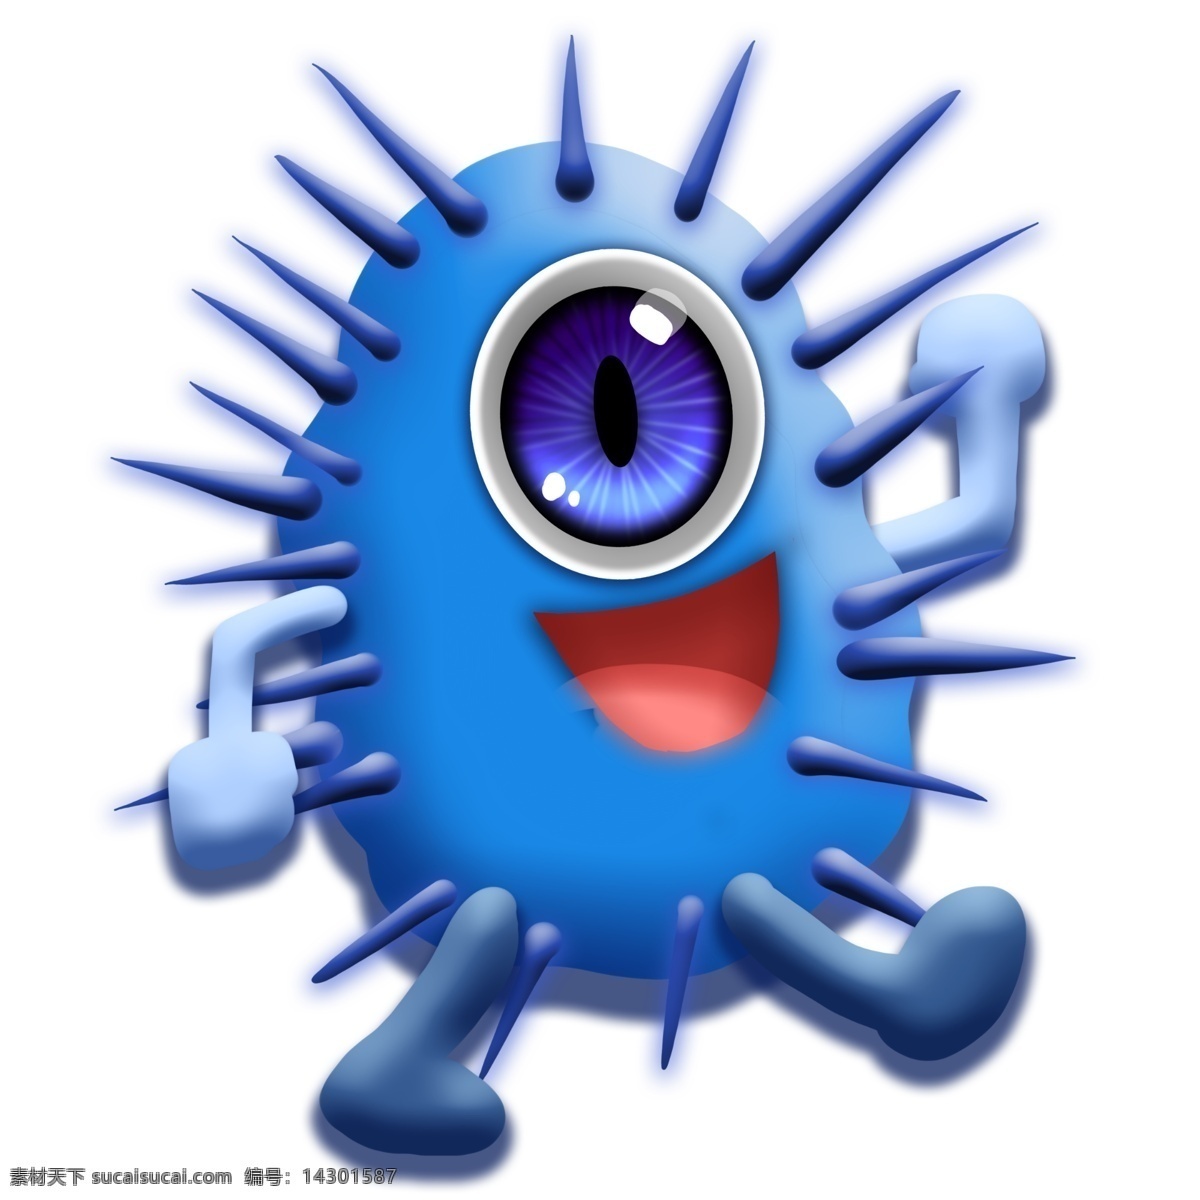 蓝色 毒刺 细菌 病毒 卡通 大眼睛 独眼 医学 生物 害怕 恶魔 冷笑 疾病 生病 菌体 菌状 细胞